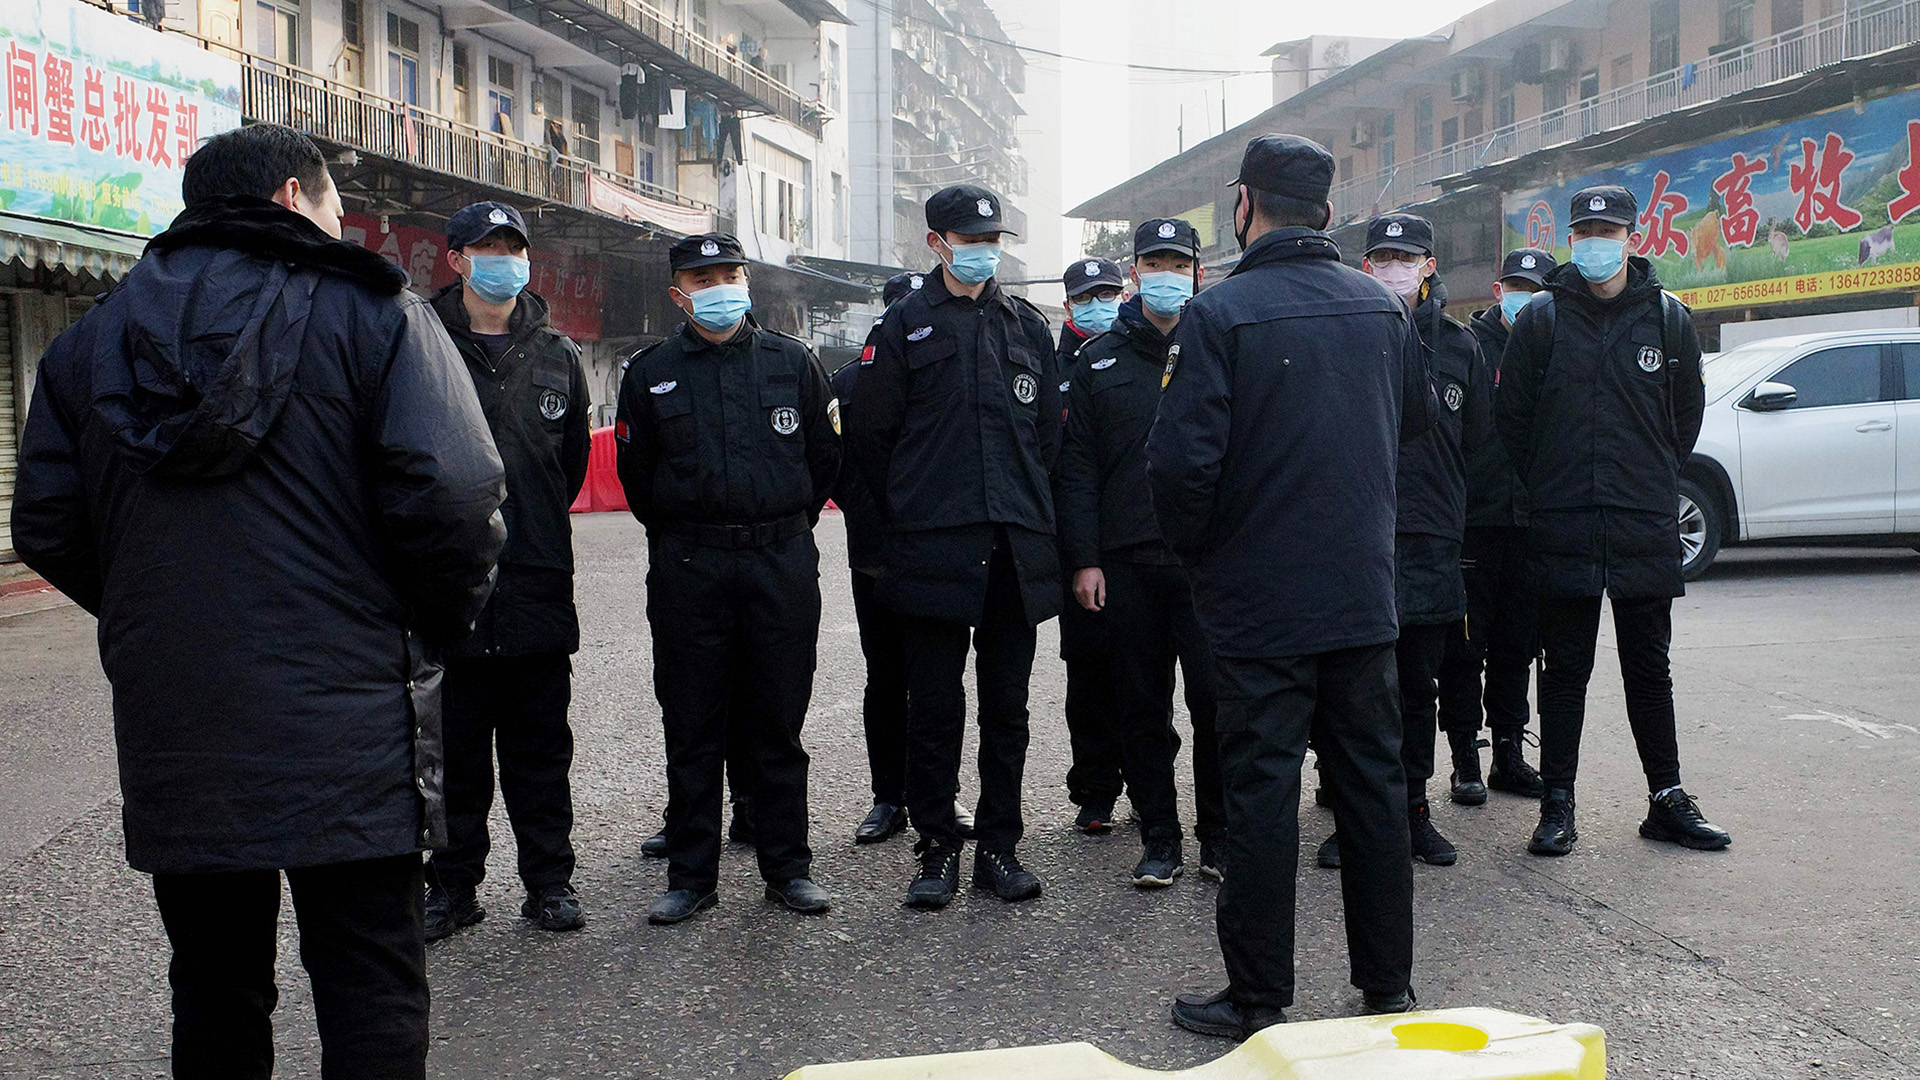 Sicherheitskräfte stehen vor dem gesperrten Fischmarkt in Wuhan, China | AFP